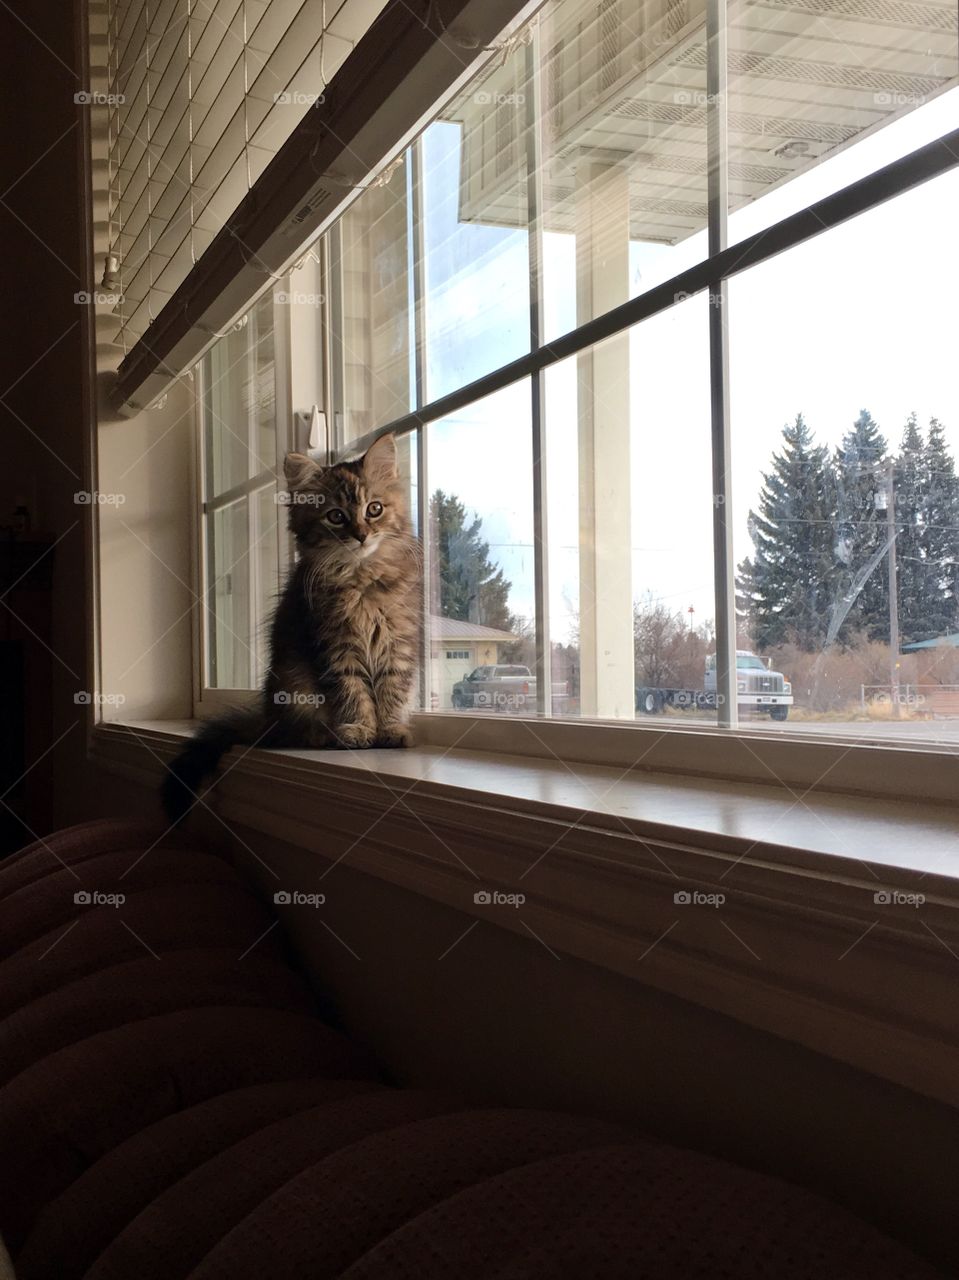 Kitten in the window 